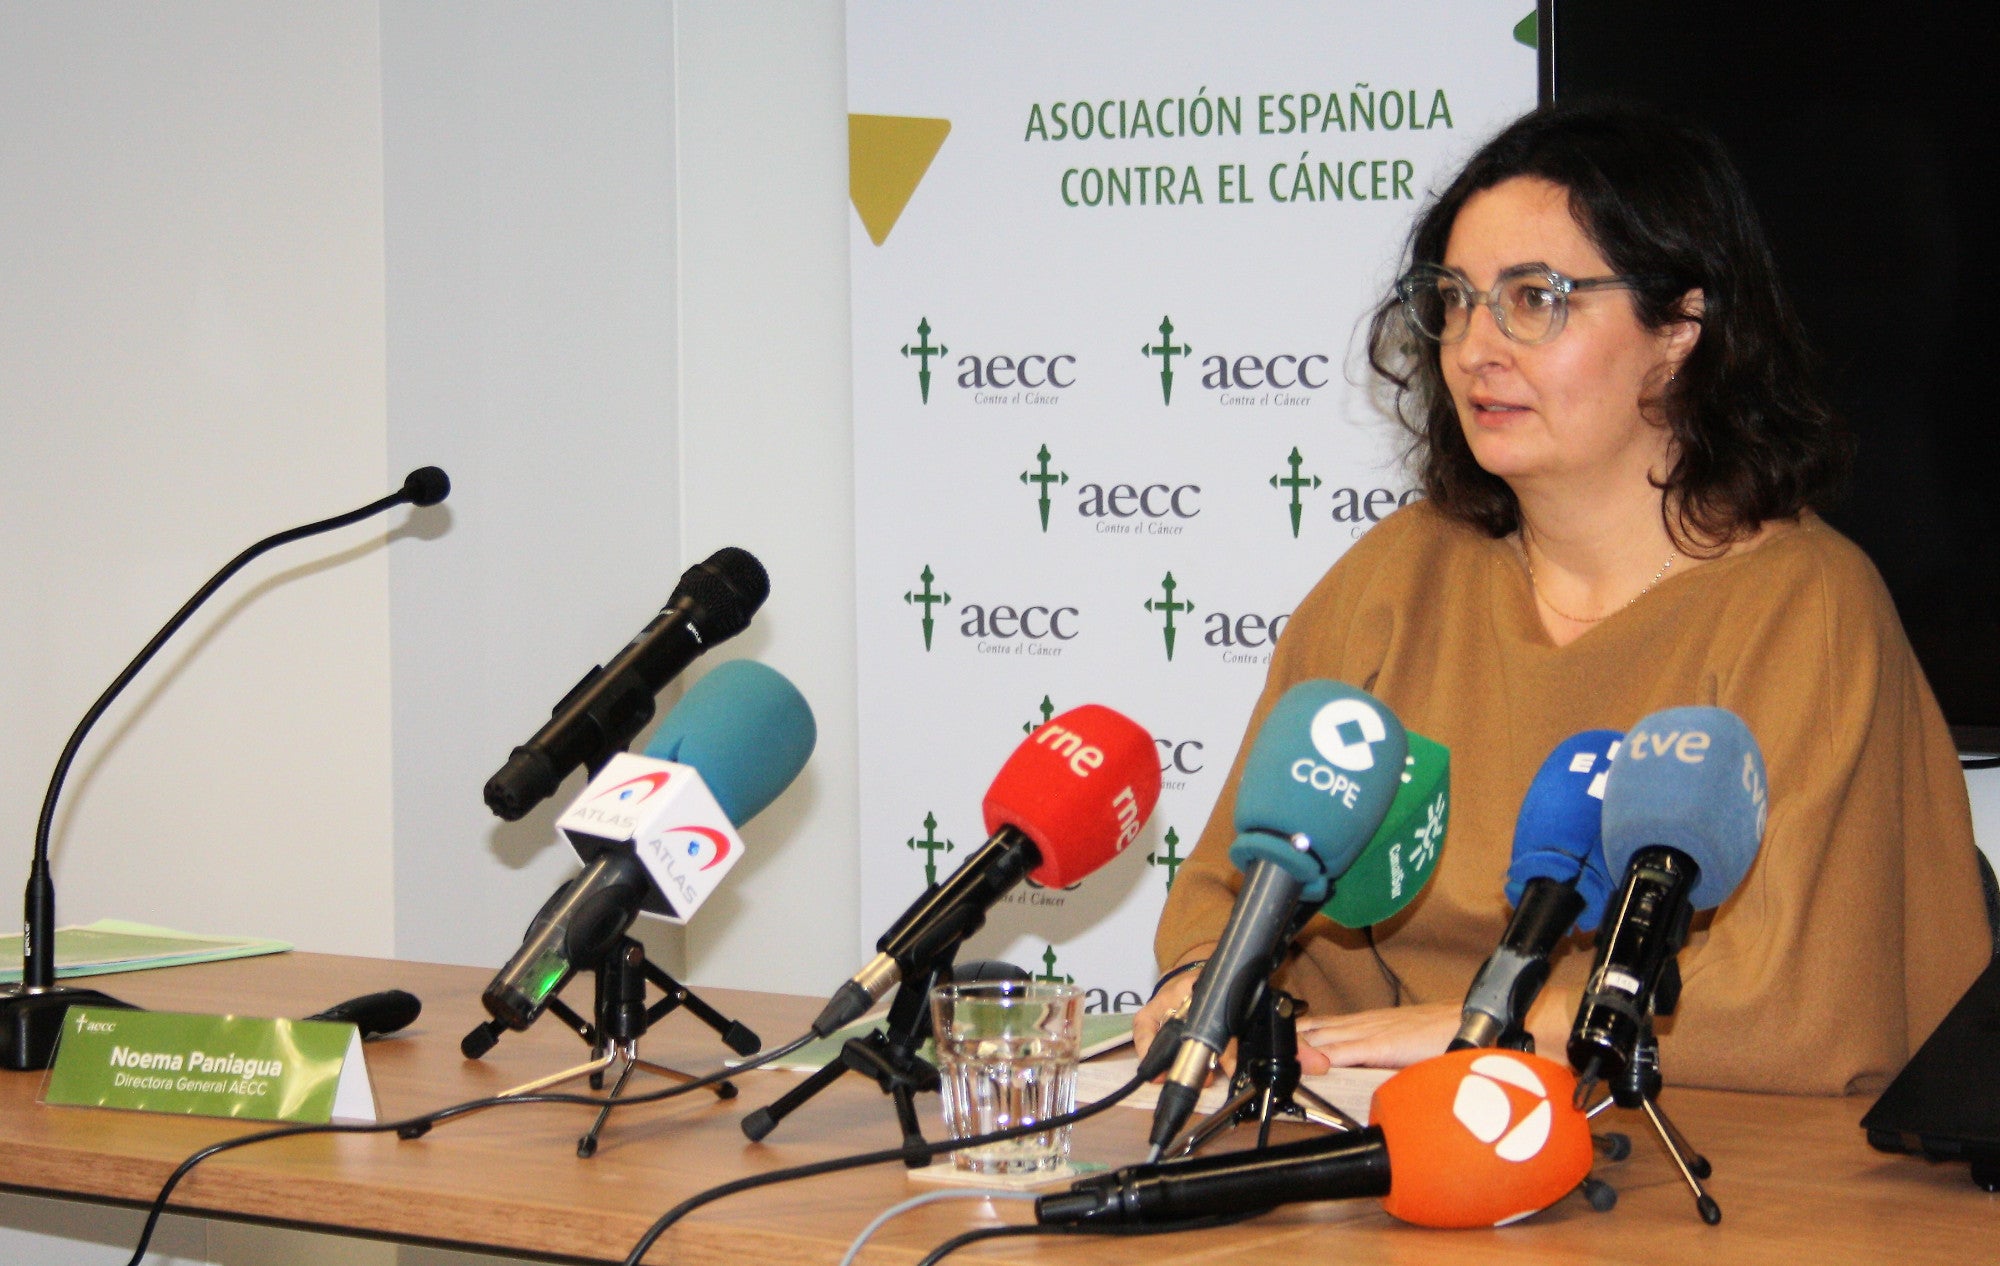 Noema Paniagua, Directora General de la AECC ante los medios / EFE Salud